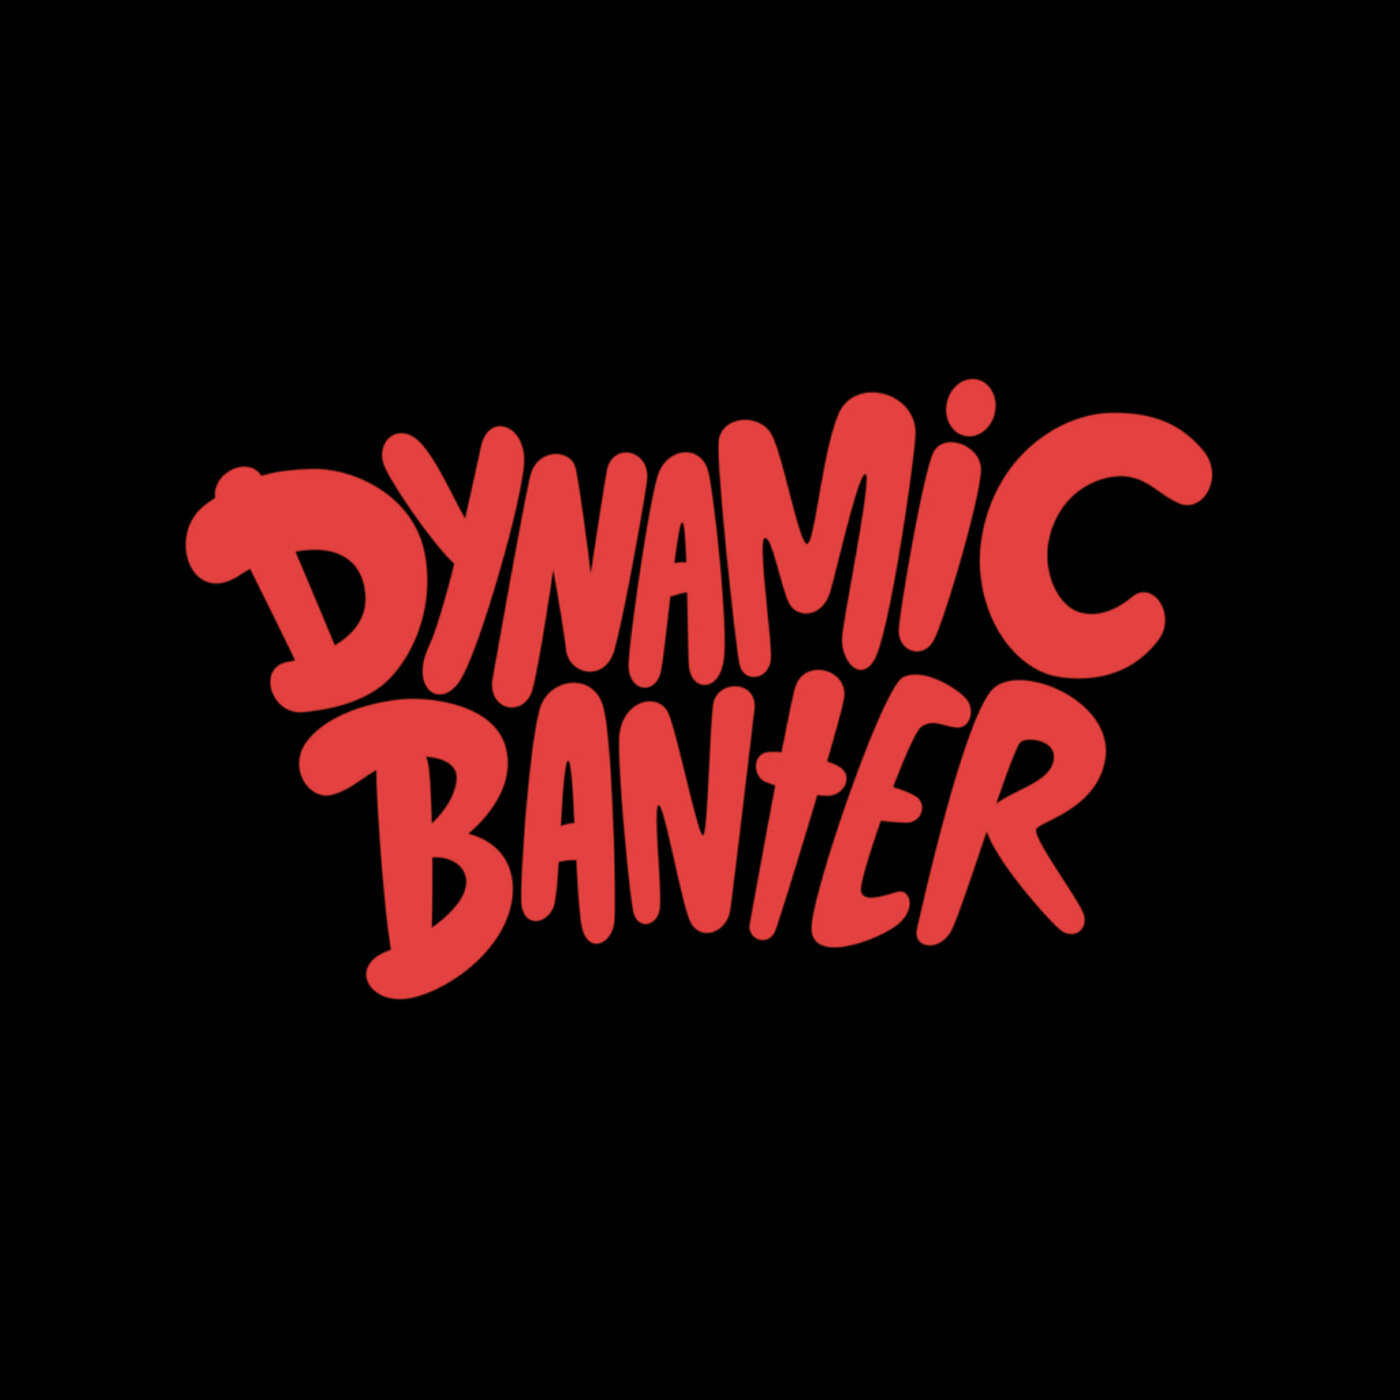 Episode 98 - Dynamic Danger